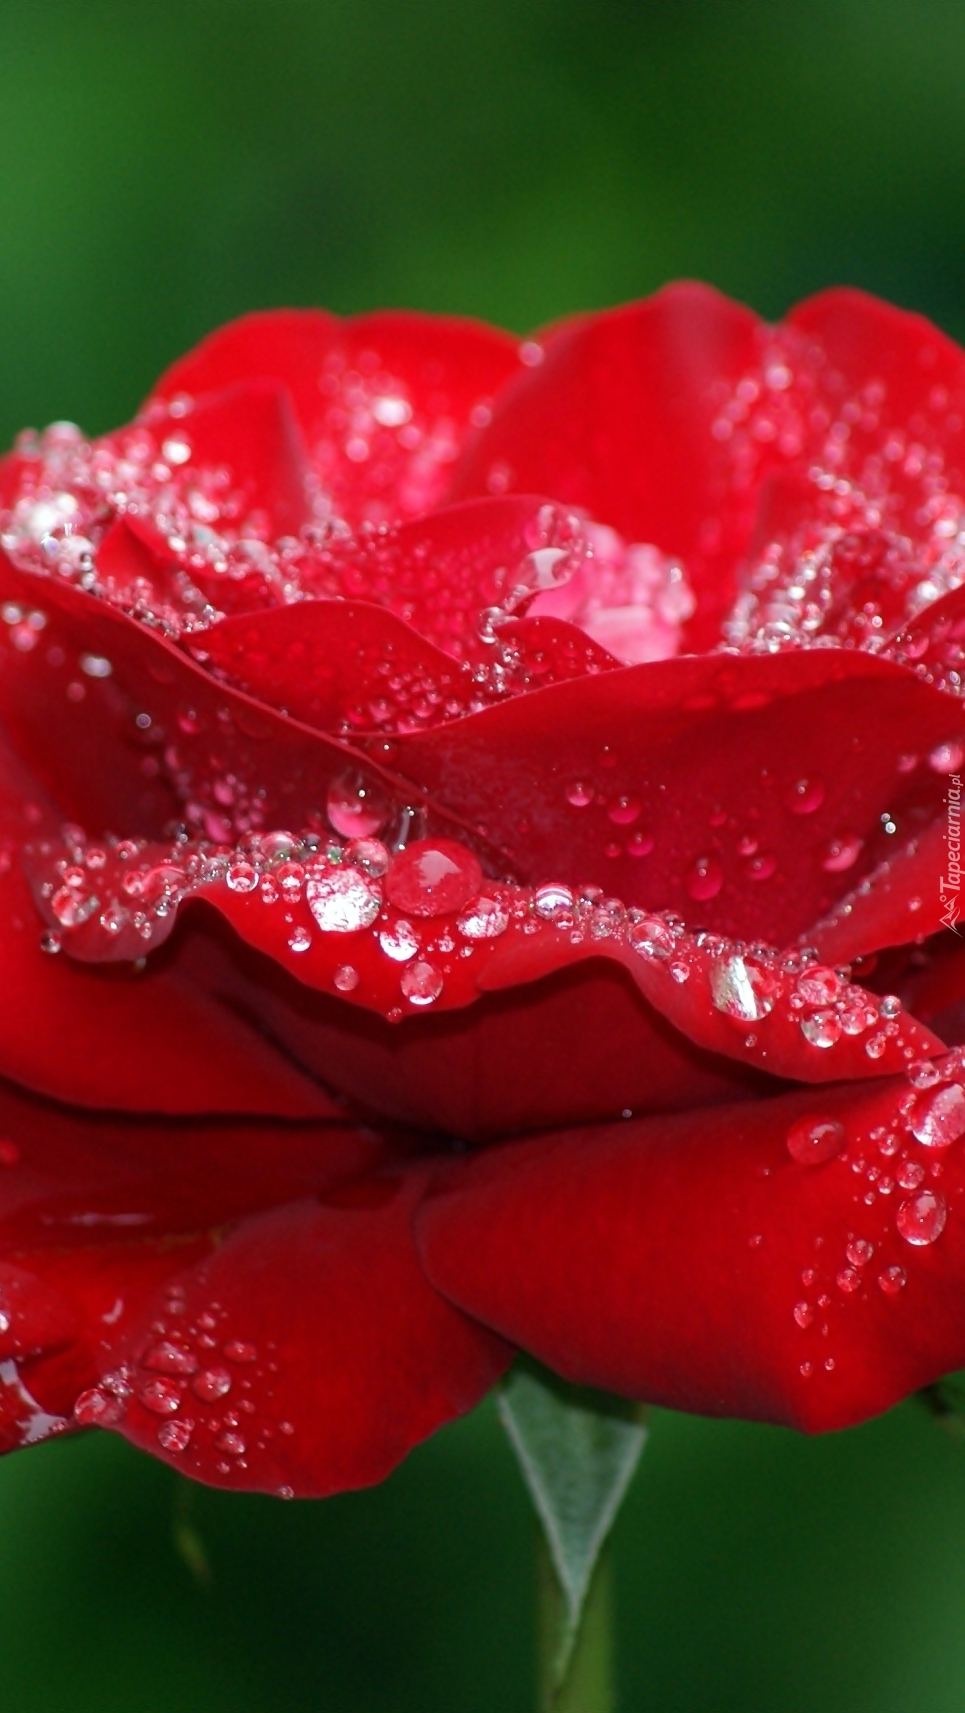 Czerwona róża w kroplach rosy